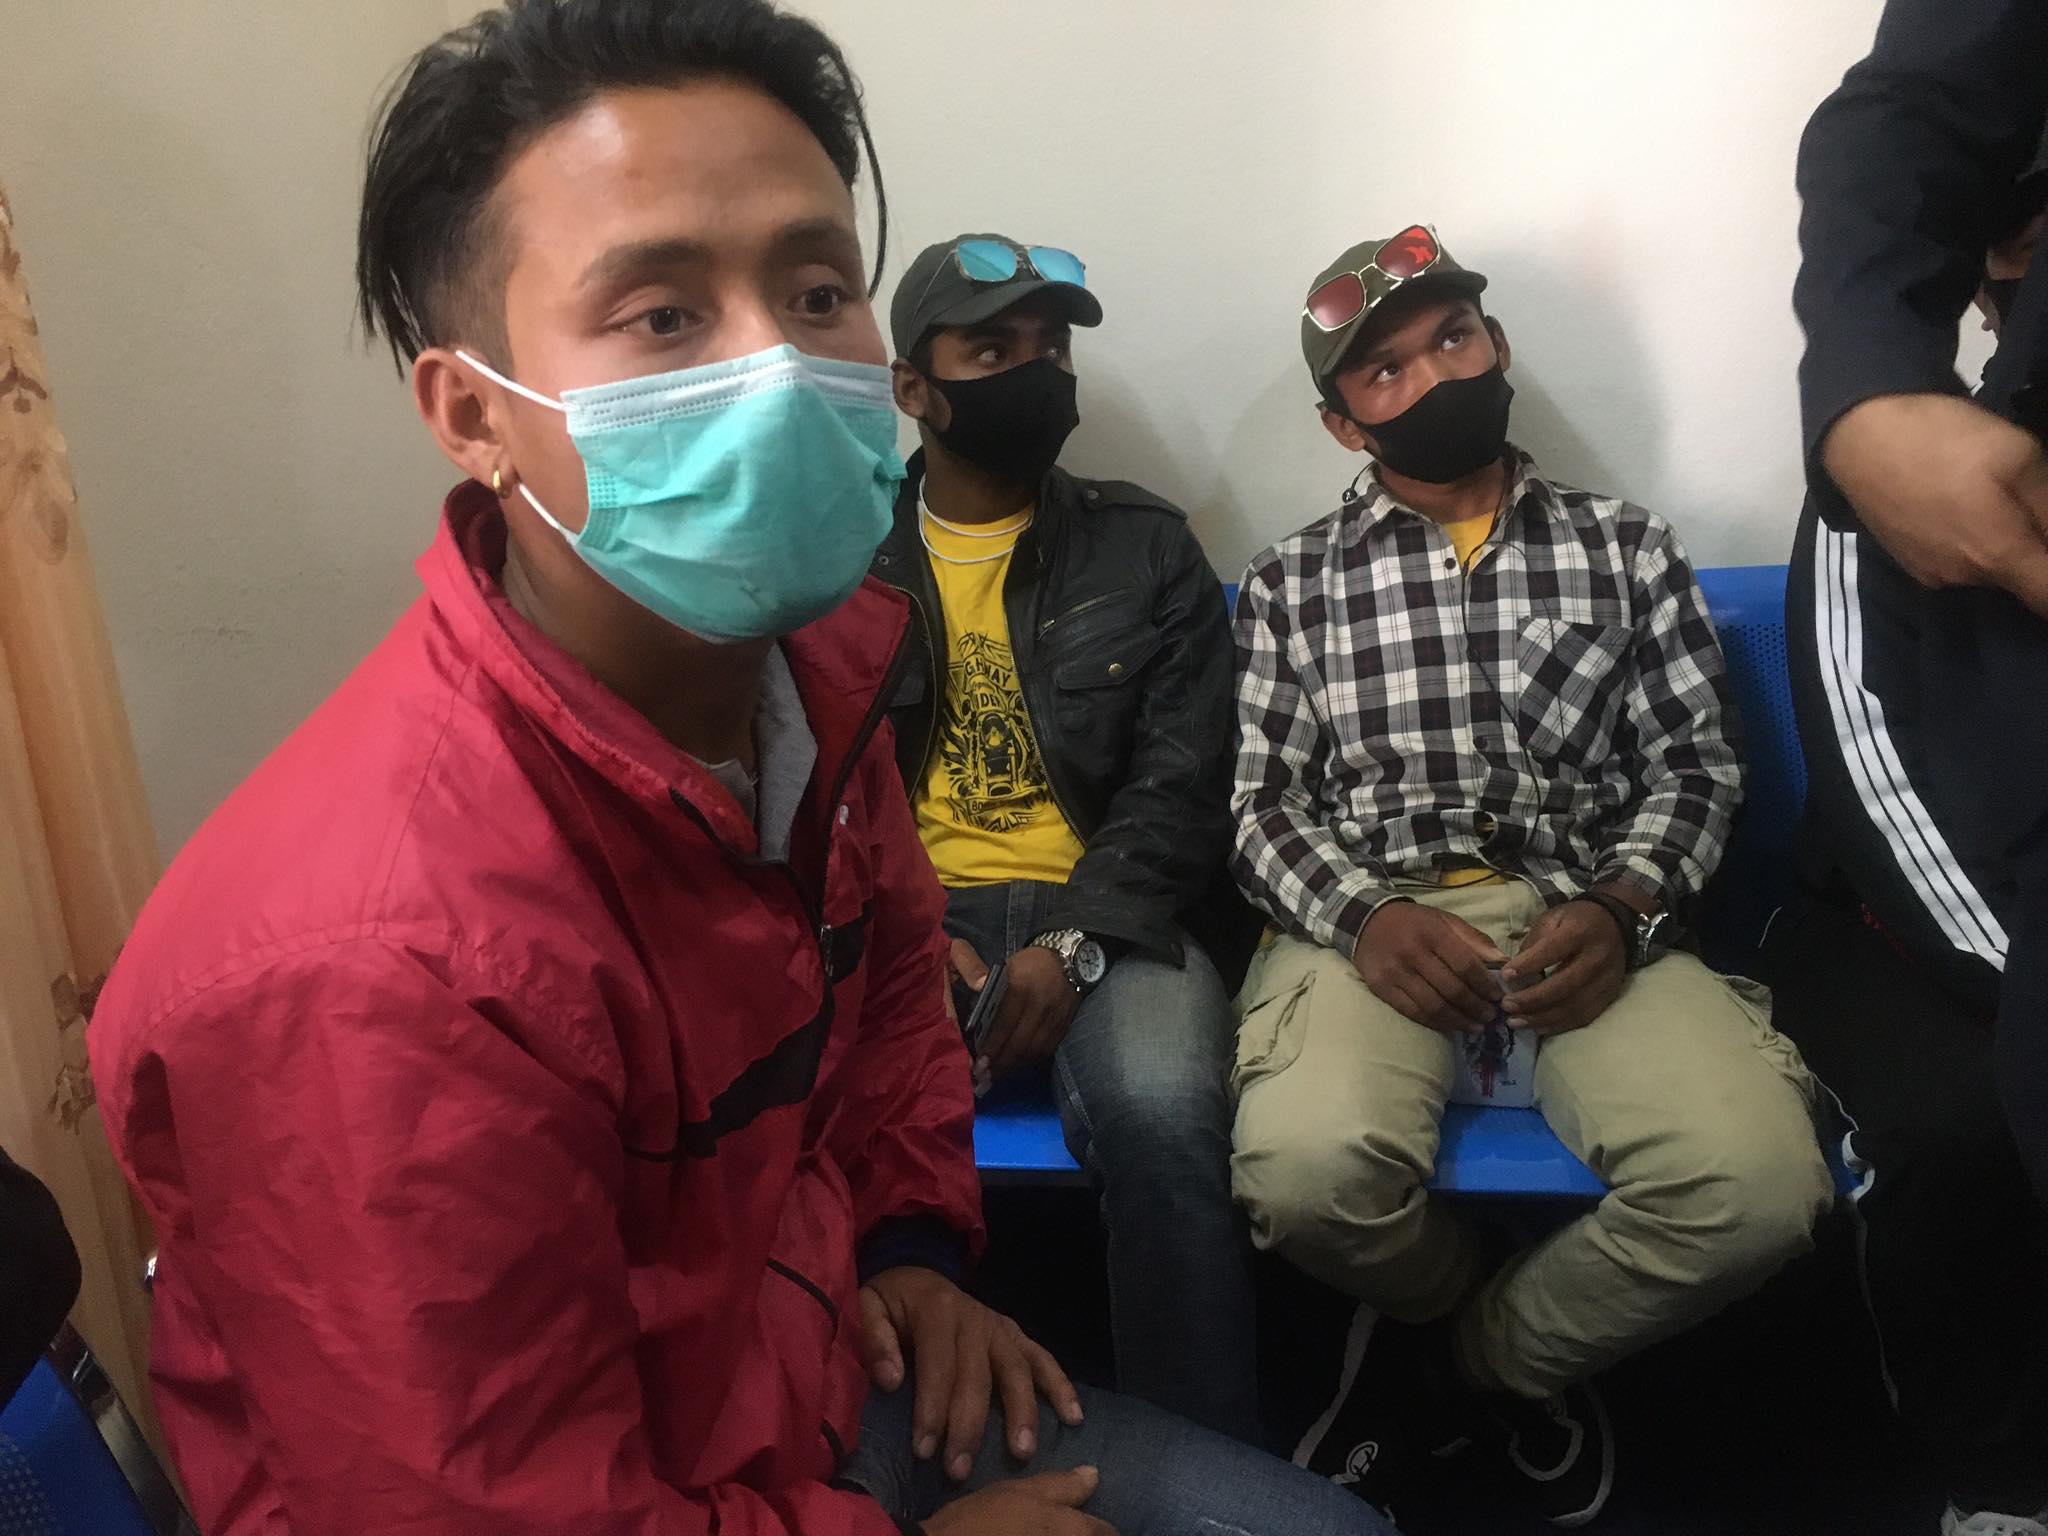 विभागद्वारा नेपाल म्यानपावरमा छापा, पैसा फिर्ता पाइने आशामा युवा